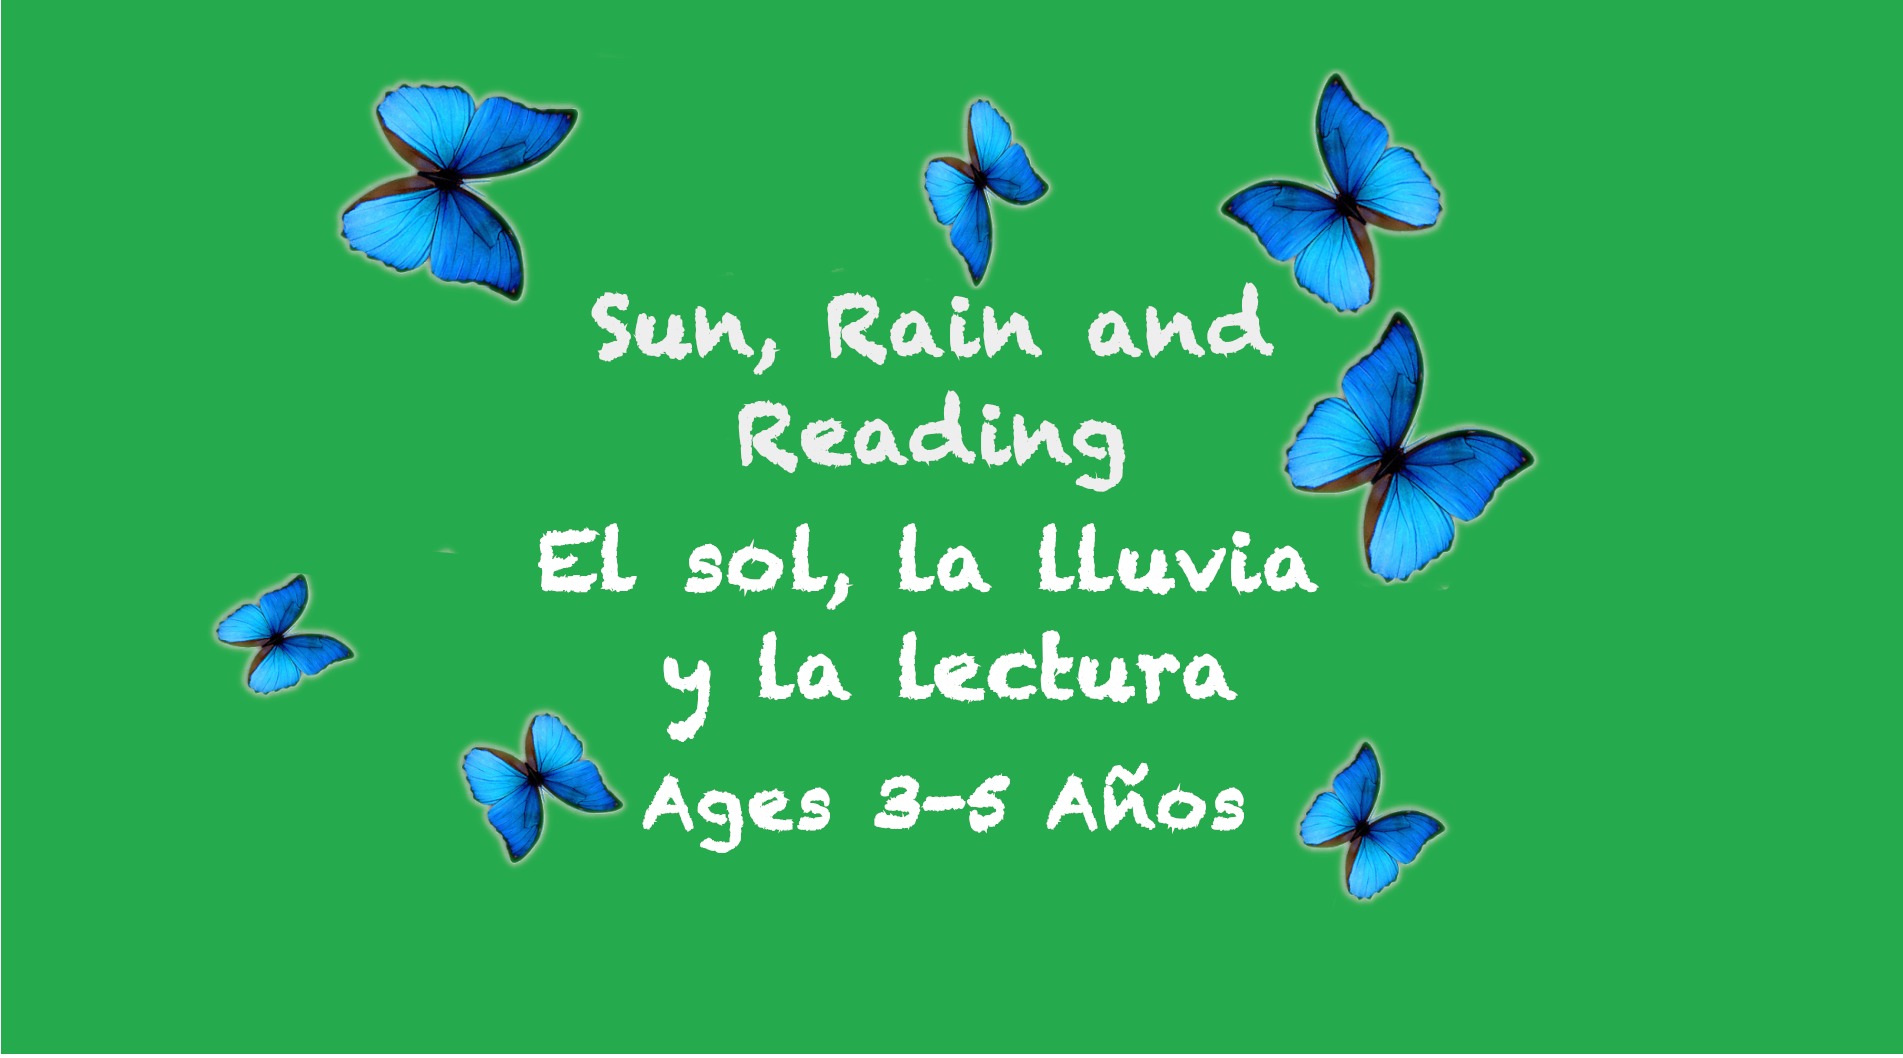 Sol, lluvia y lectura para niños de 3 a 5 años